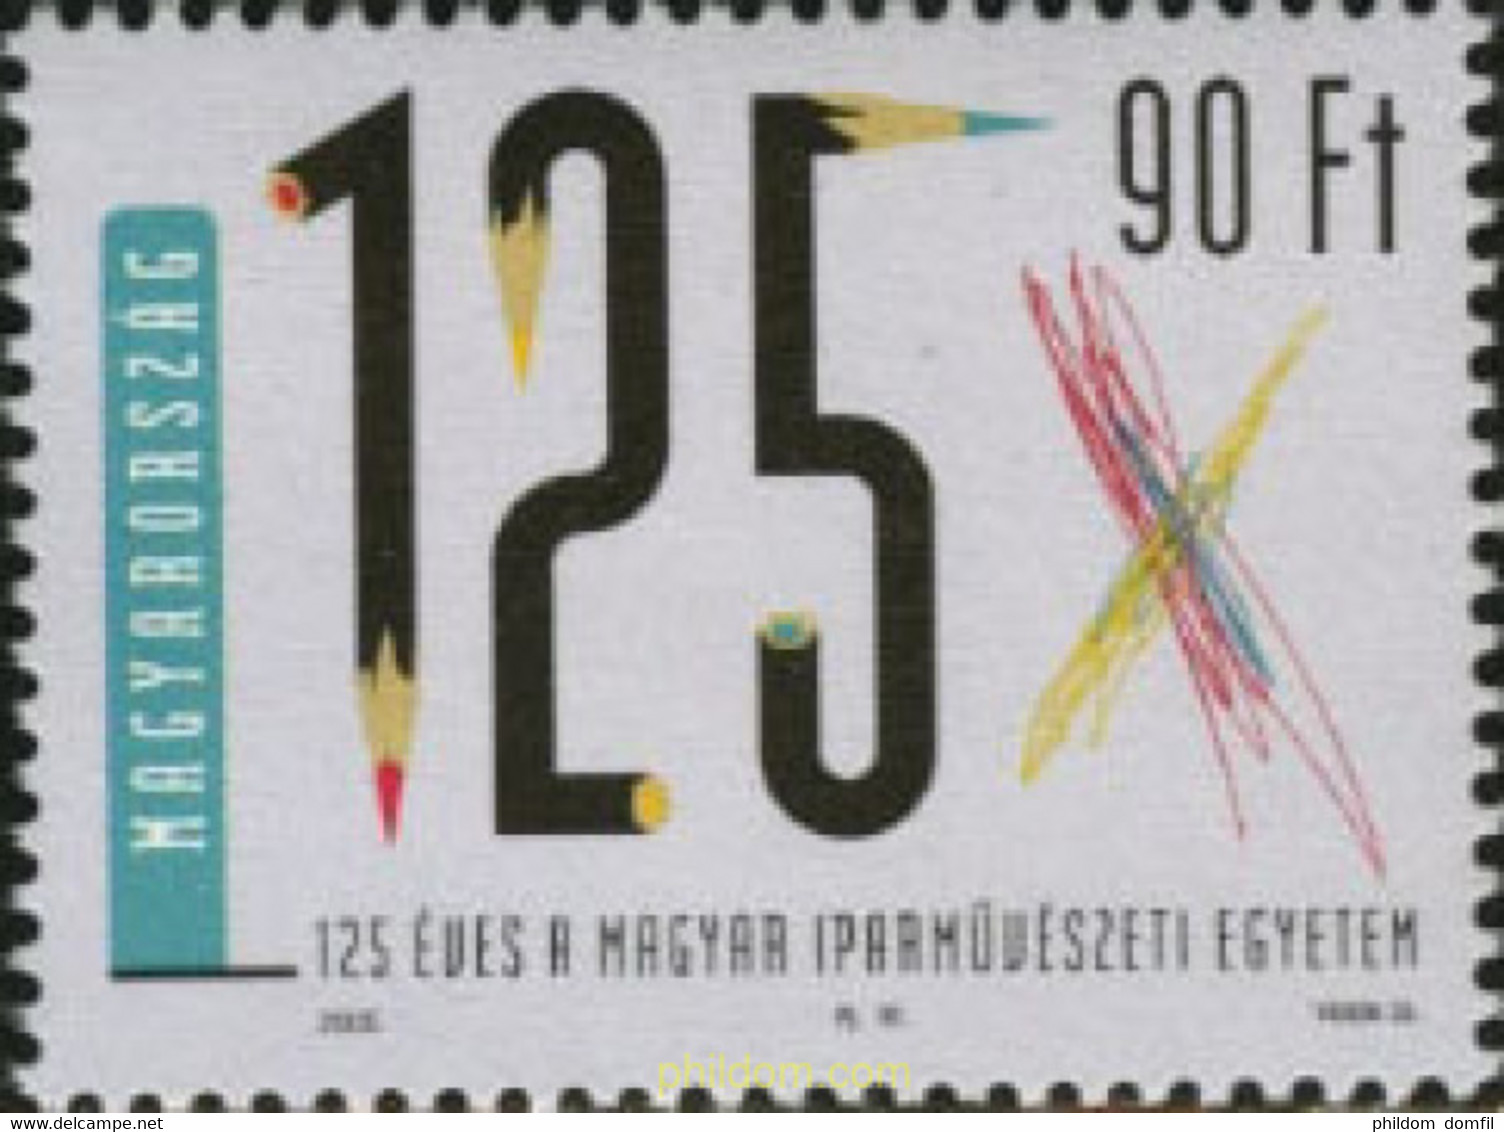 198003 MNH HUNGRIA 2005 125 ANIVERSARIO DE LA UNIVERSIDAD DE DISEÑO DE HUNGRIA - Used Stamps